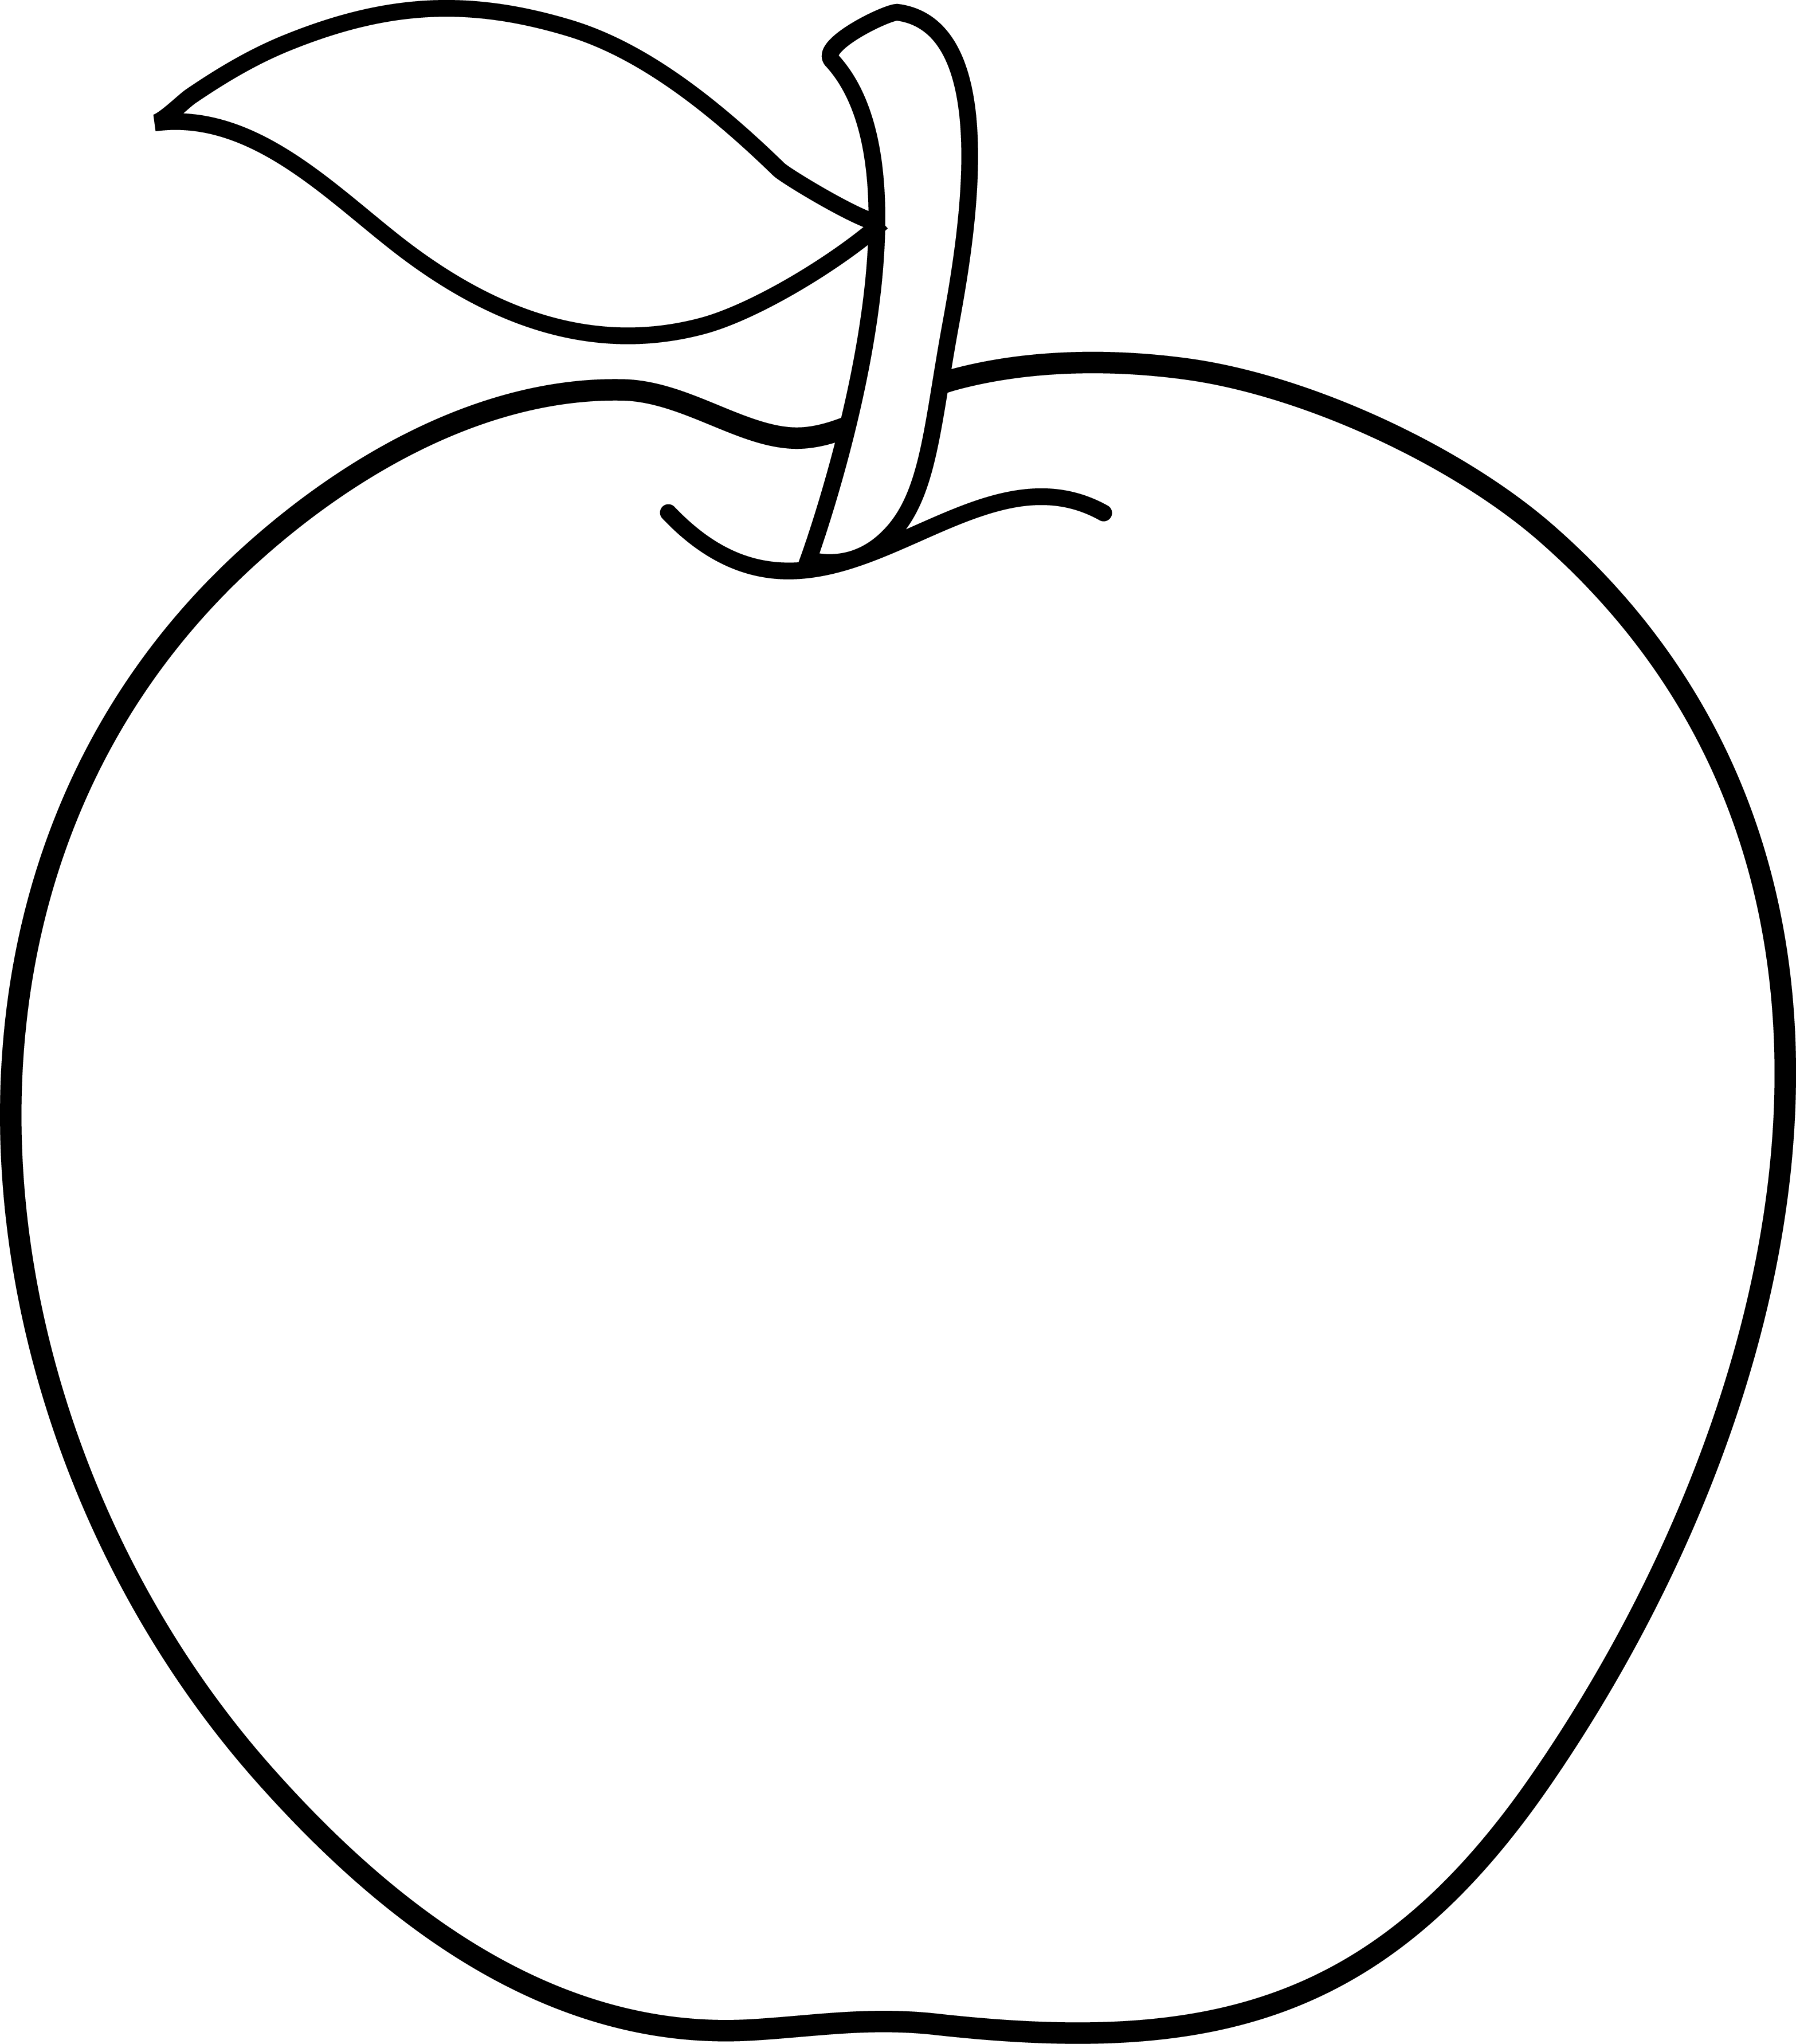 White Fruit Logo - Apple free stock white